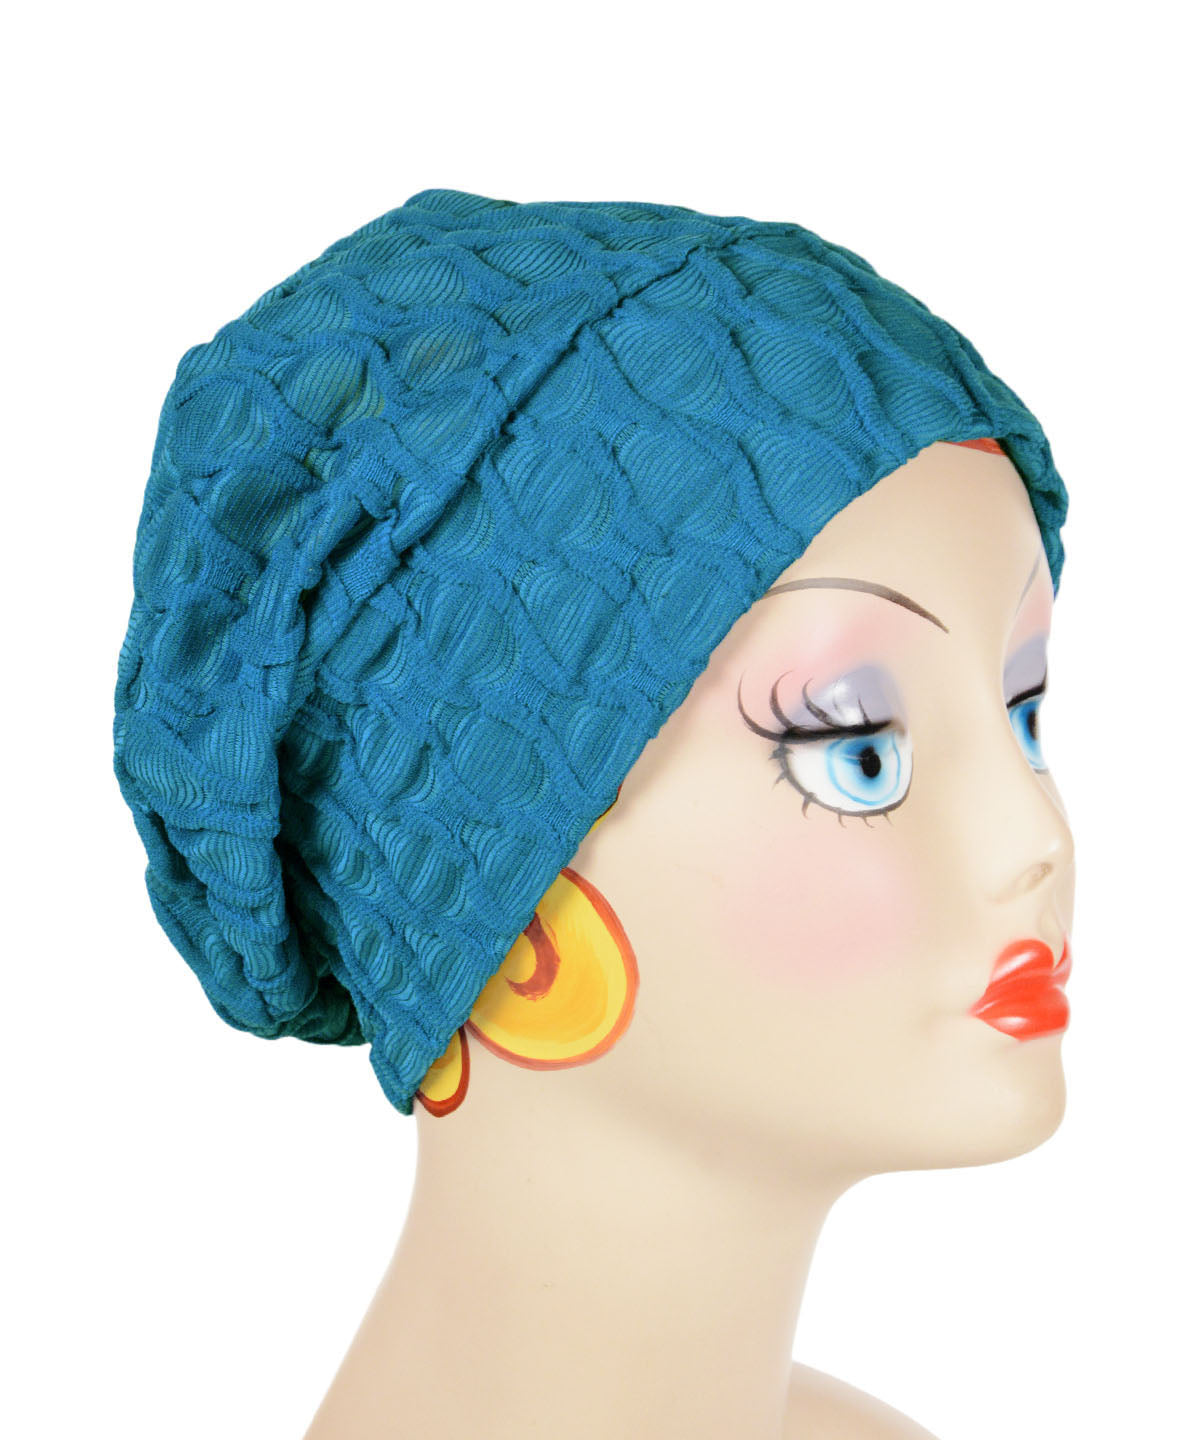 Rowdie Hat in Cerulean Blue, shown on model. LYC by Pandemonium is handmade by Pandemonium Seattle.